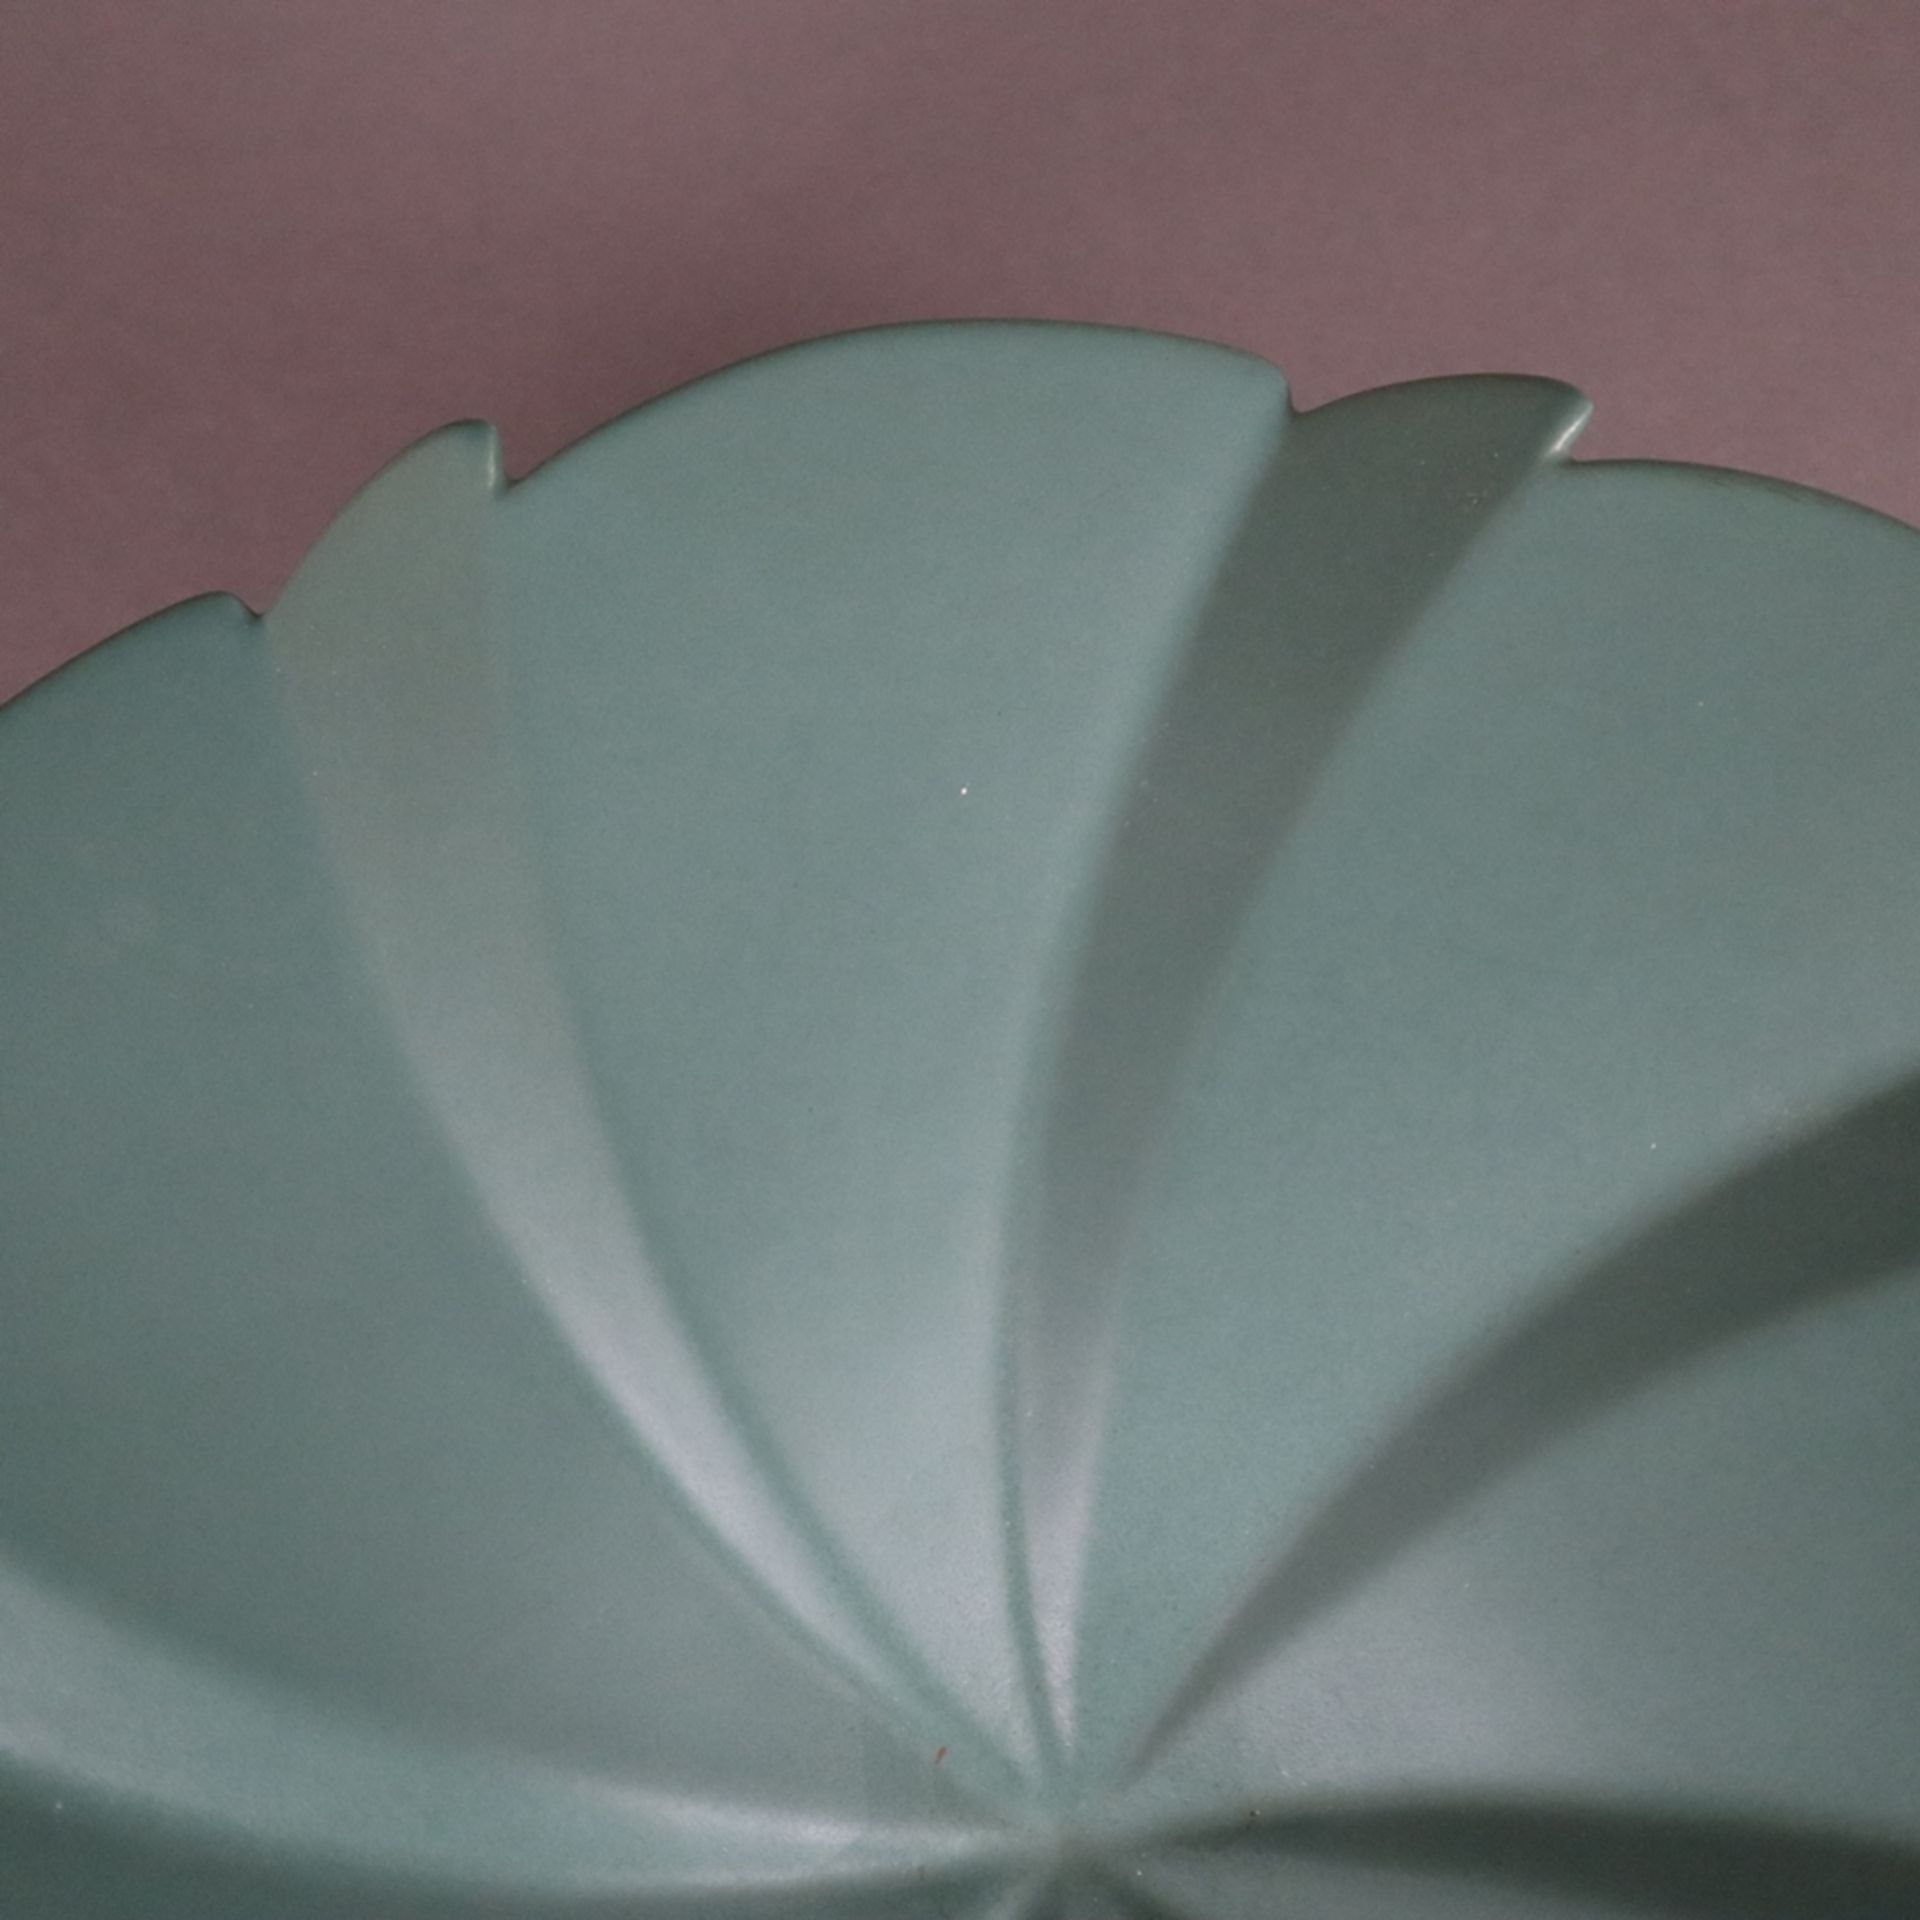 Keramikschale- Søholm, Dänemark, tannengrün glasiert, geschweifte Form auf rundem Standfuß, unterse - Image 4 of 6